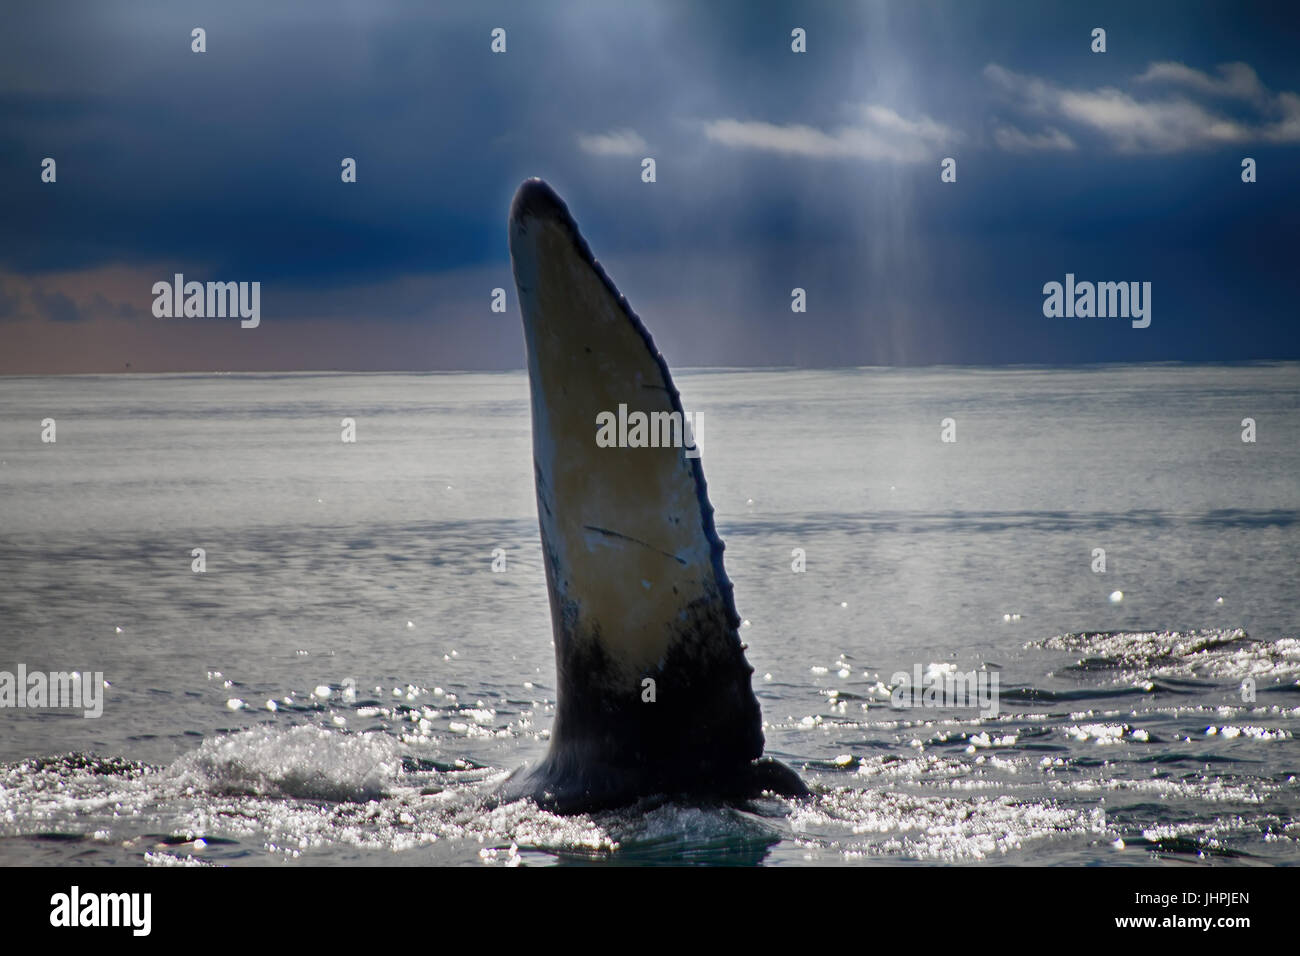 Ehe-Kommunikation. Hump-backed Wal (Impressionen Novaeangliae) schlägt Wasser mit großen Flosse. Impressionen bedeutet riesige Flügel. Pazifischen Ozean Aleuten-Comman Stockfoto